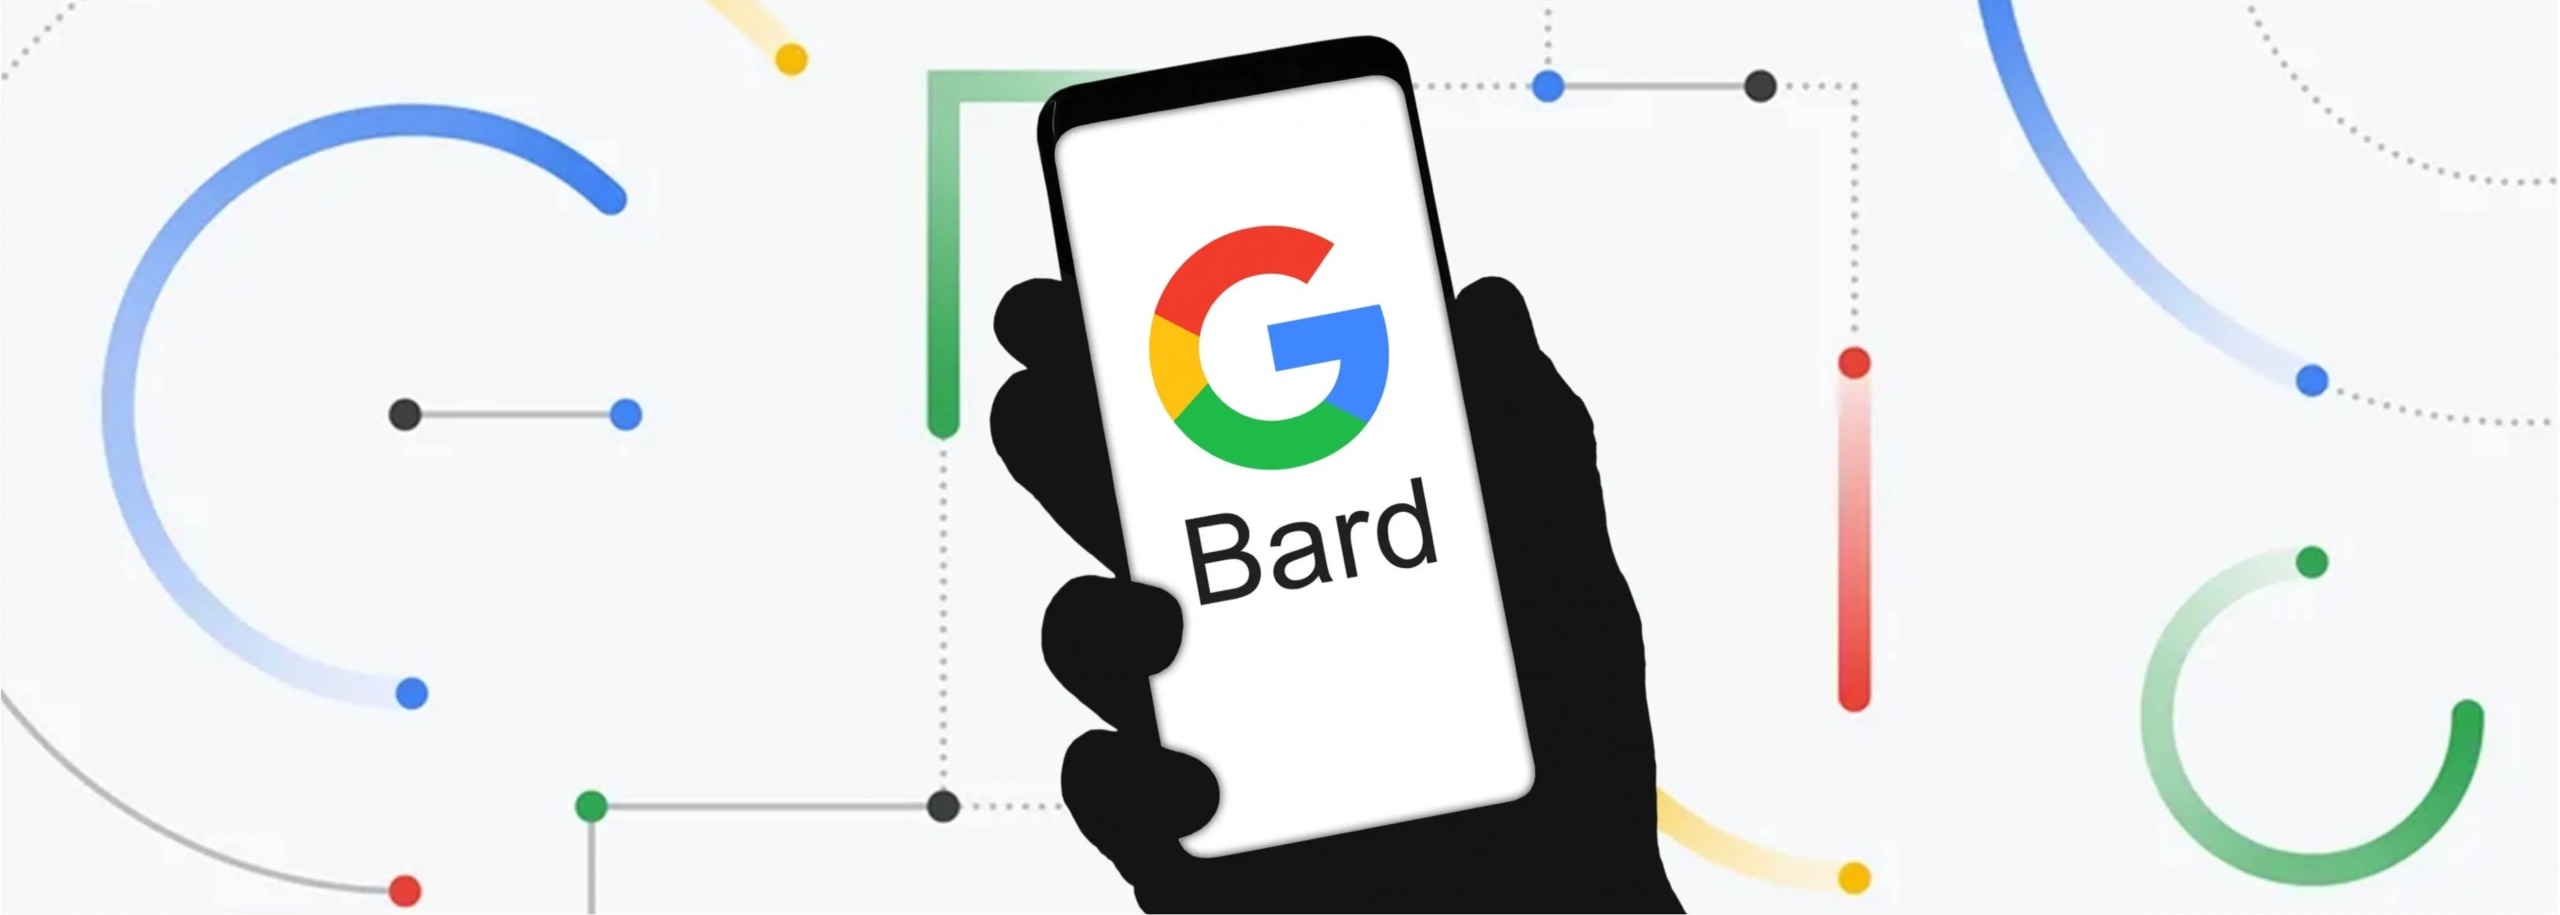 Google Bard Webp scaled 1